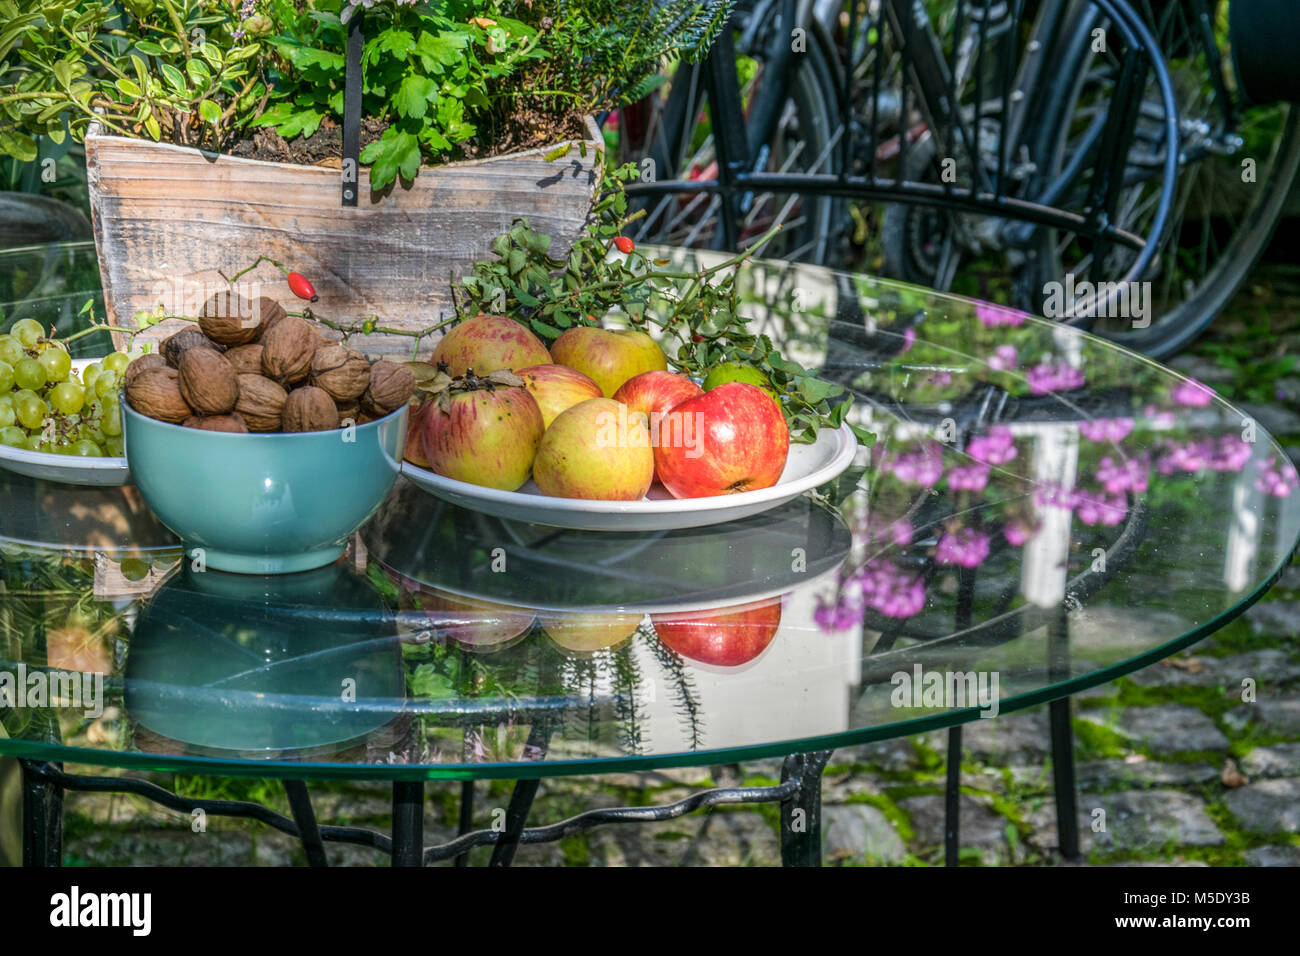 Ein schöner Innenhof im Weinort Sommerach mit einem mit Früchten der Saison gedeckten Tisch Stock Photo